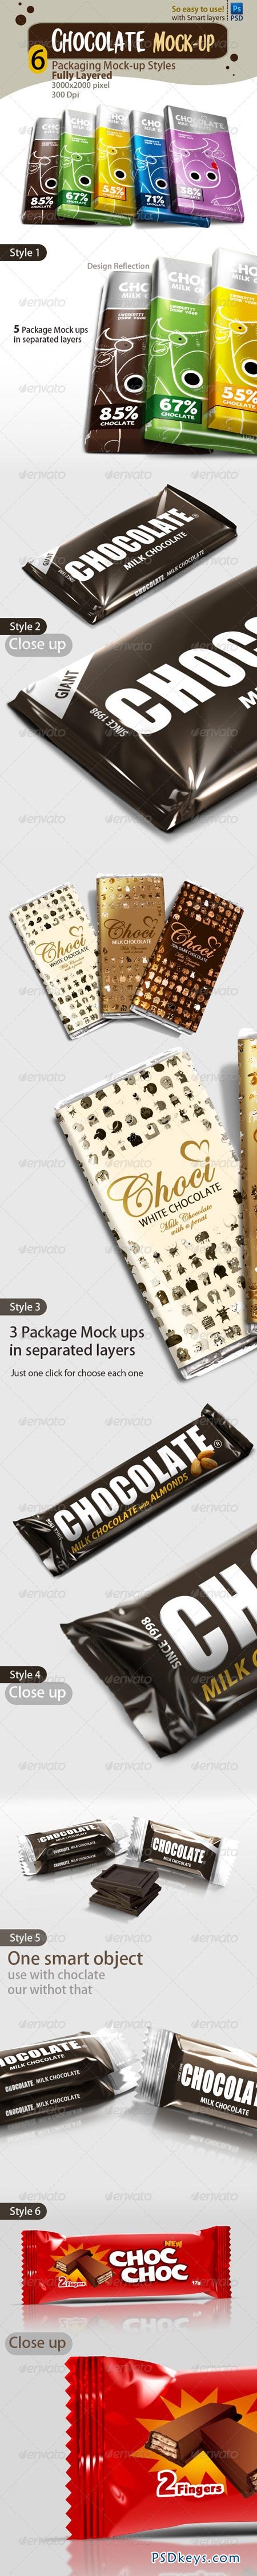 Chocolate packaging mock-ups 6119658